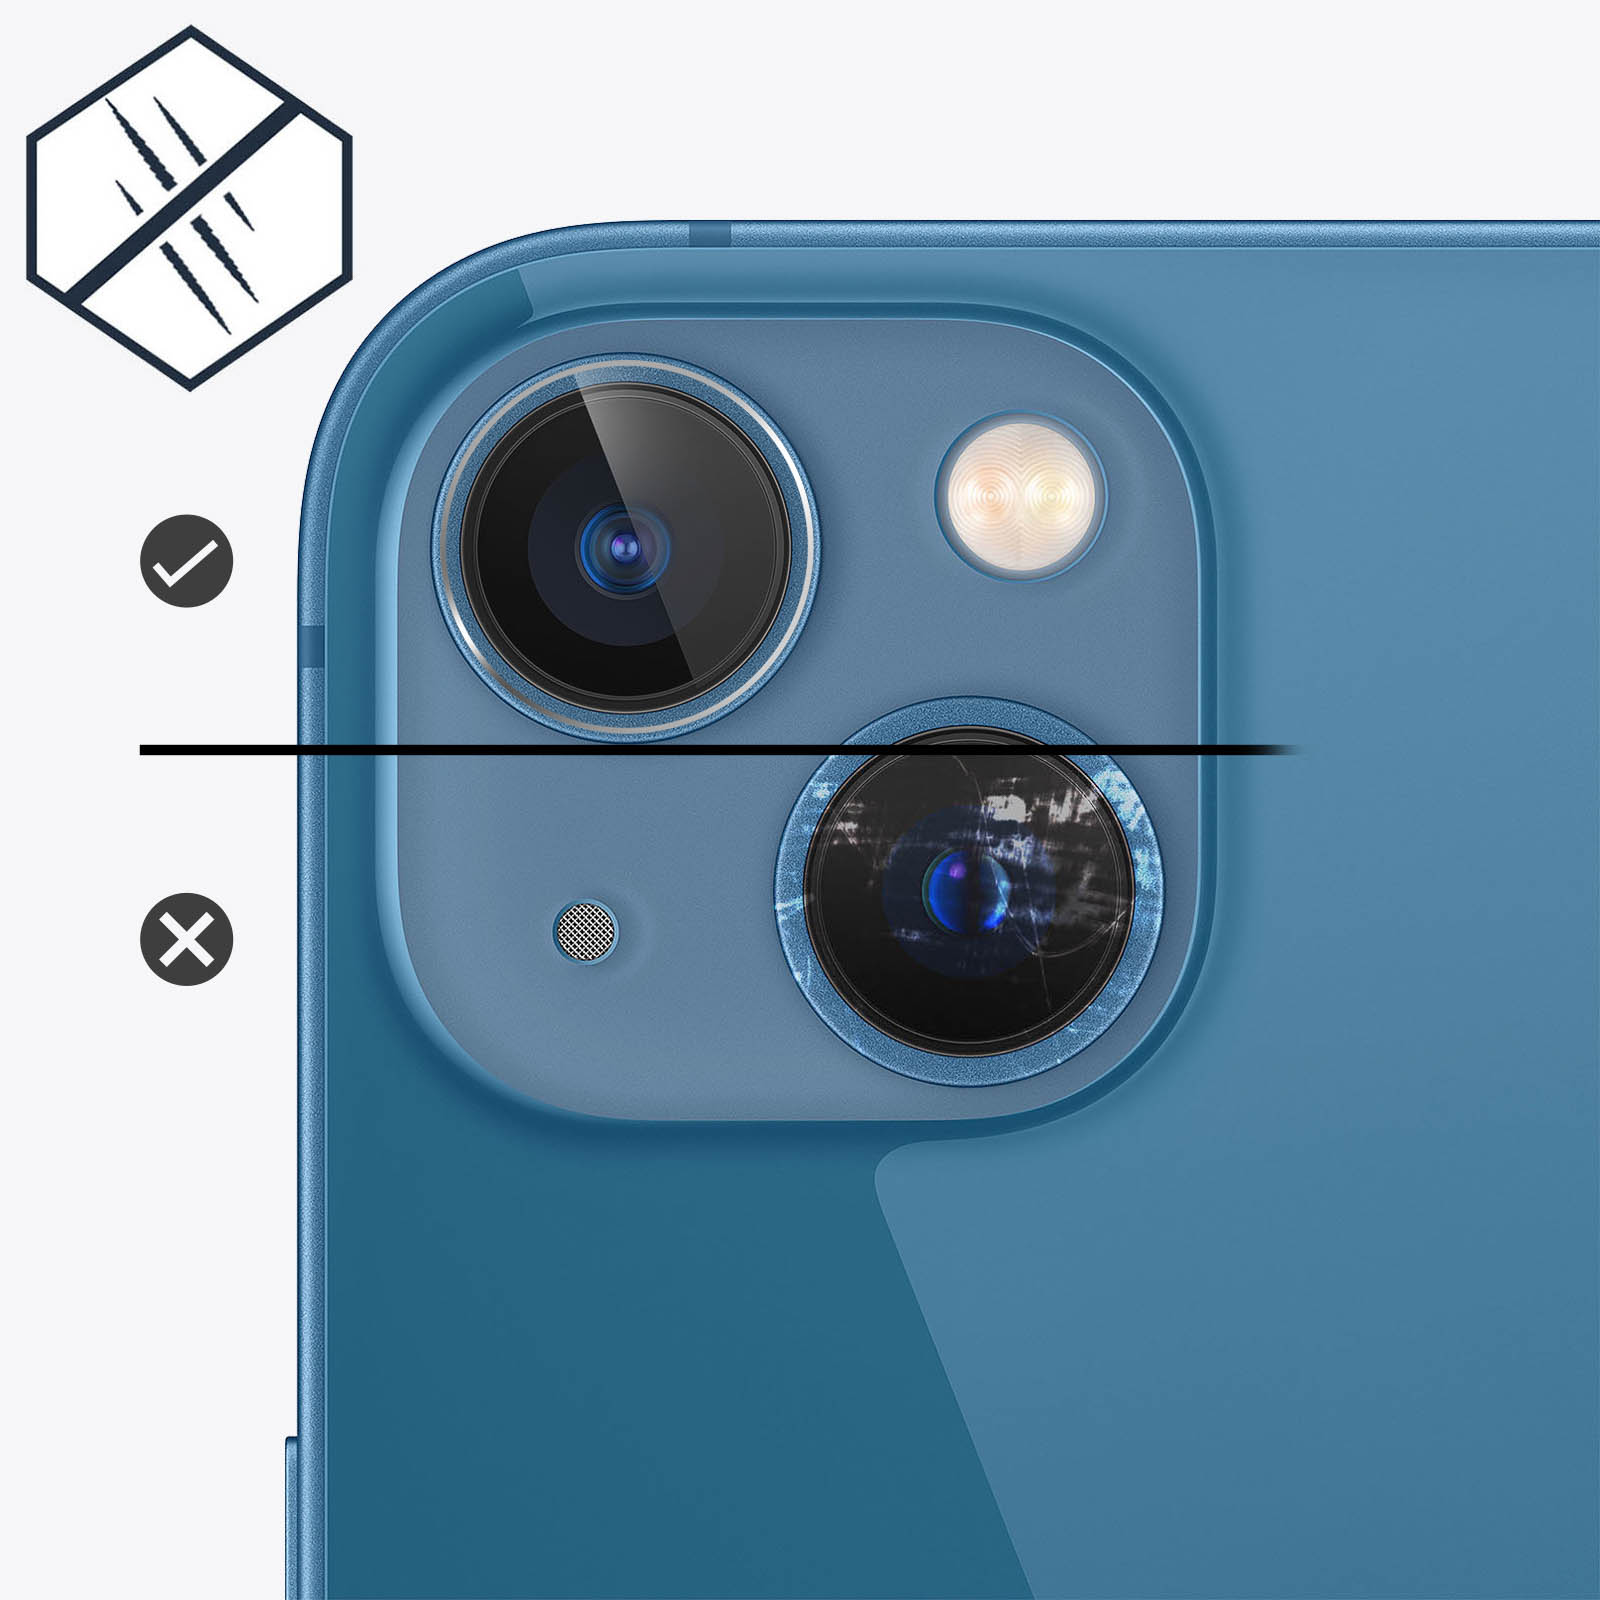 iPhone 13 PRO MAX vitre lentille camera arrière appareil photo lens verre  glass